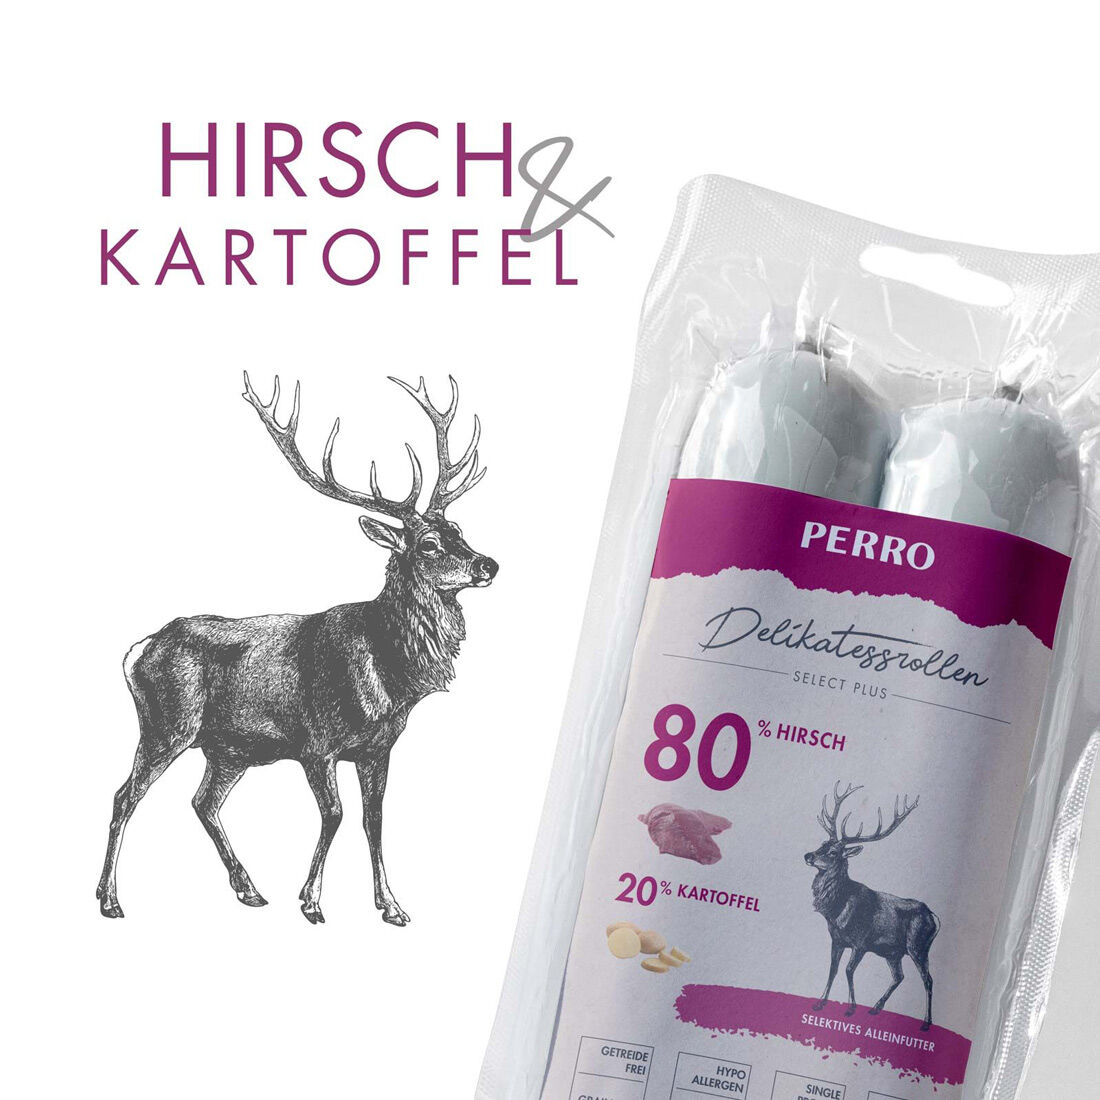 PERRO-Delikatessrolle-Hirsch-Kartoffel-Fleischwurst-fuer-Hunde-181564